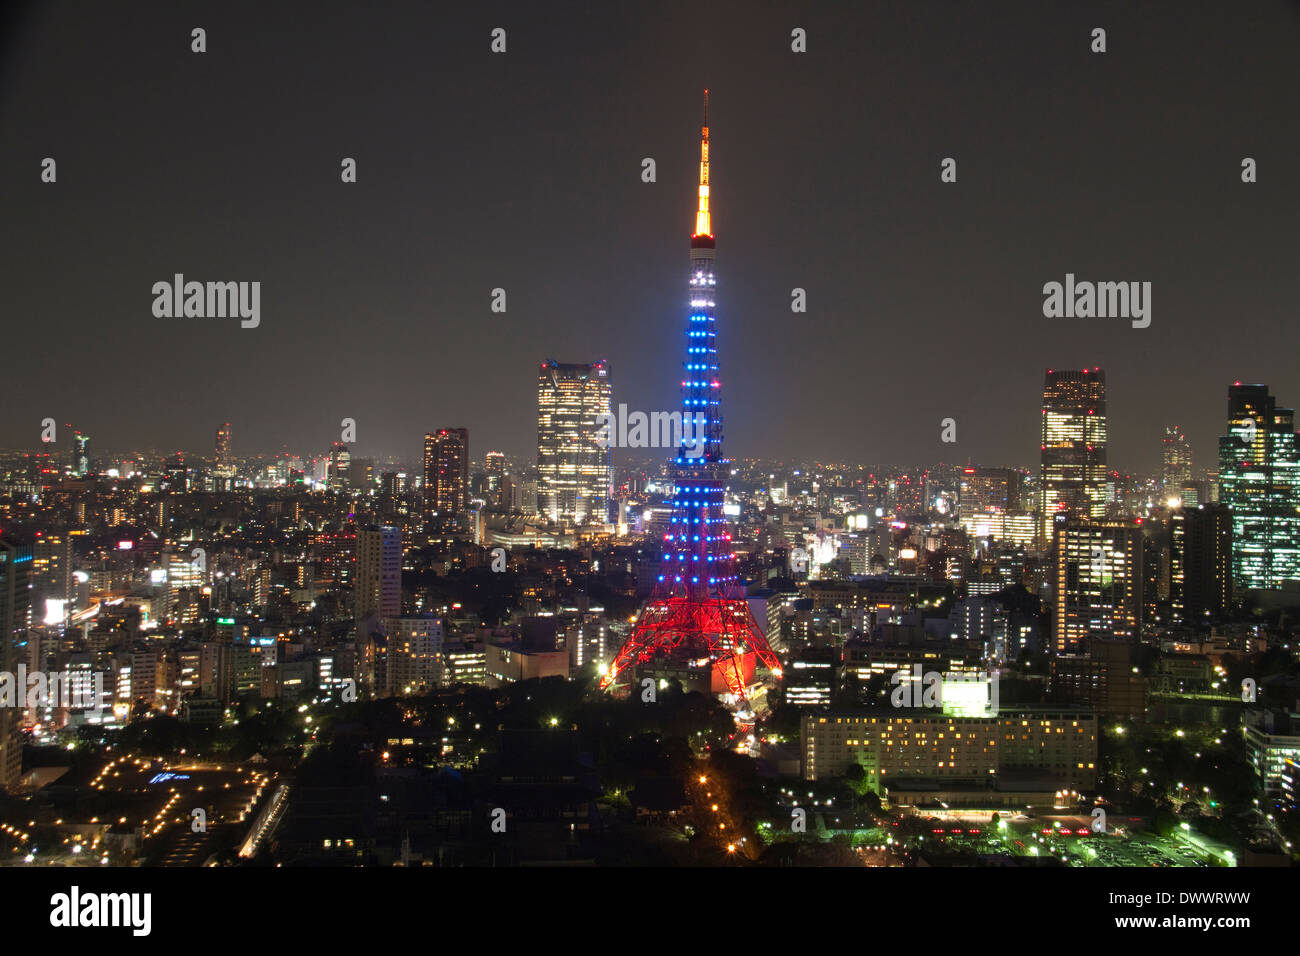 Tokyo Tower at night, Tokyo, Japan Stock Photo